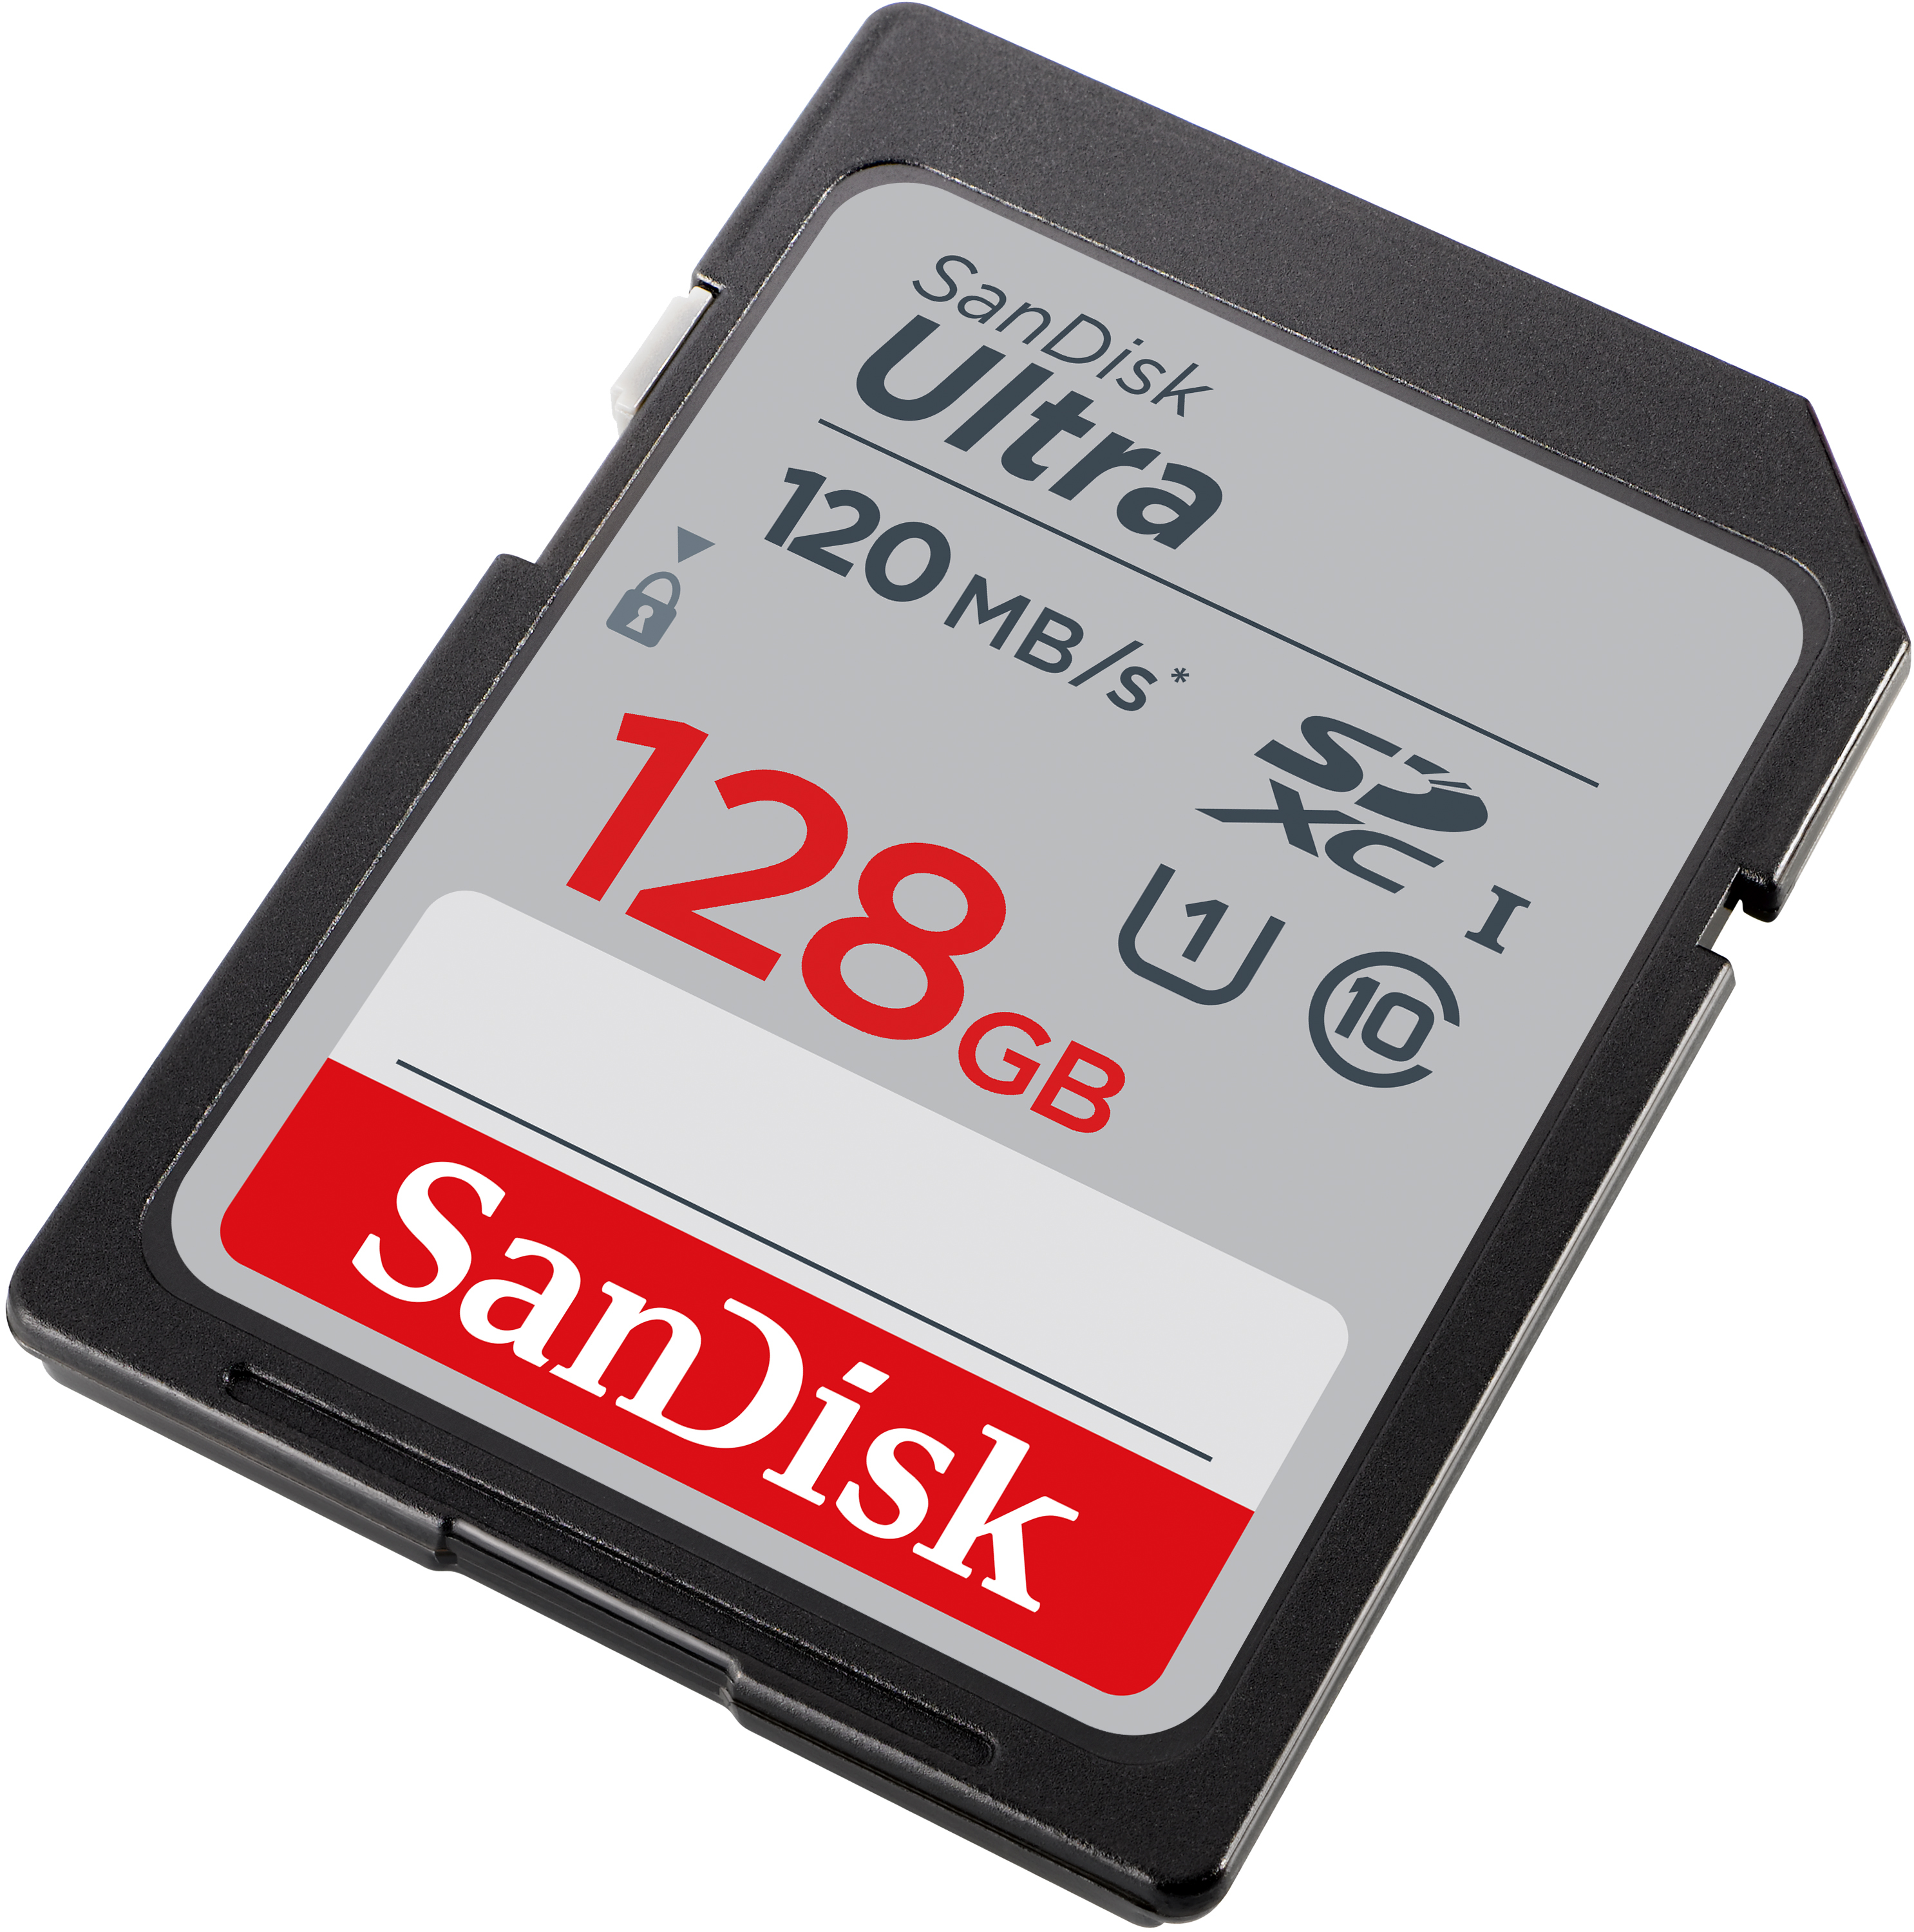 SanDisk Ultra - Flash-Speicherkarte - 128 GB